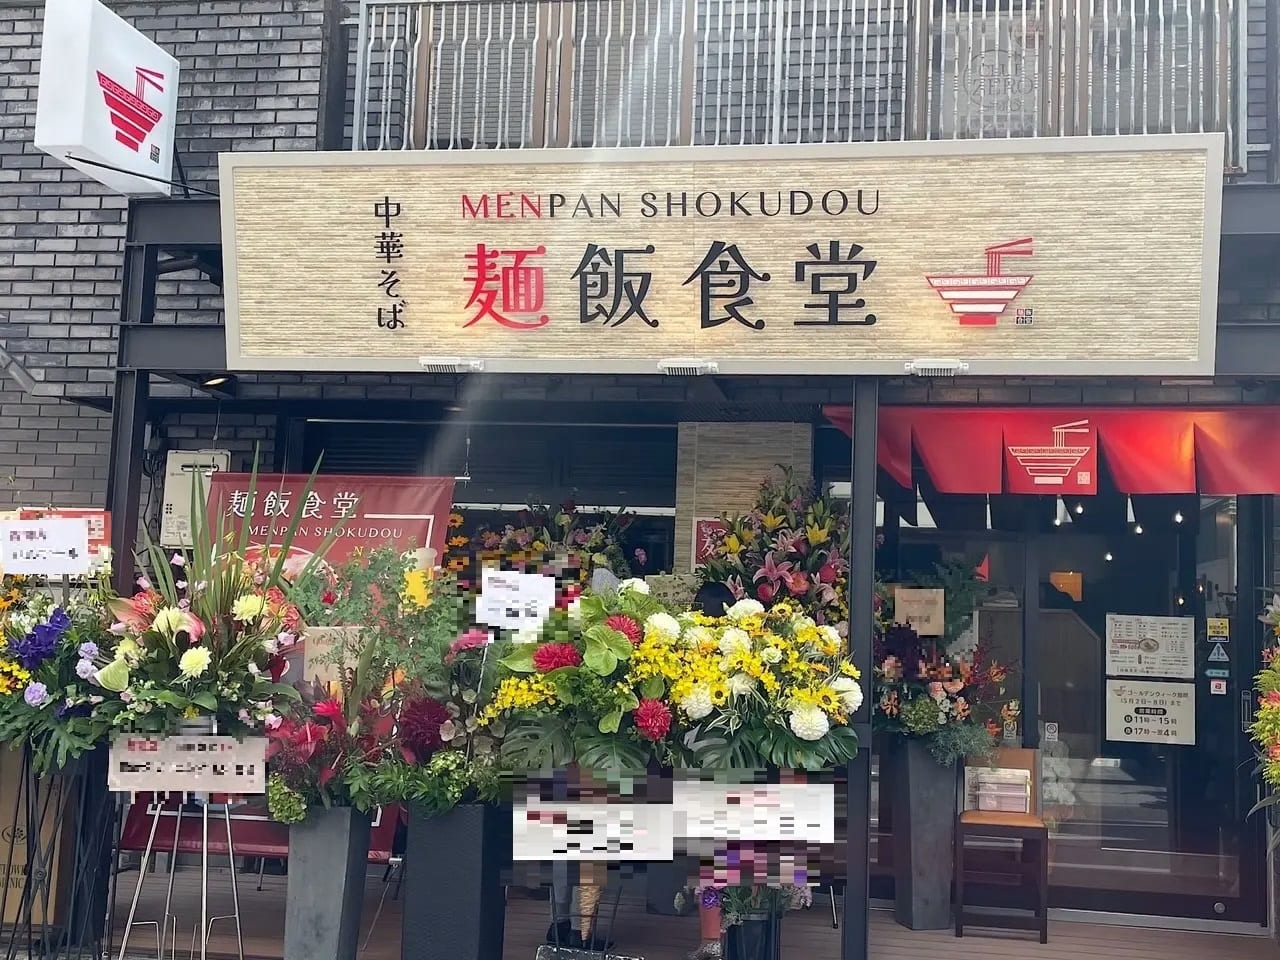 葵区両替町に麺飯食堂がオープンしました